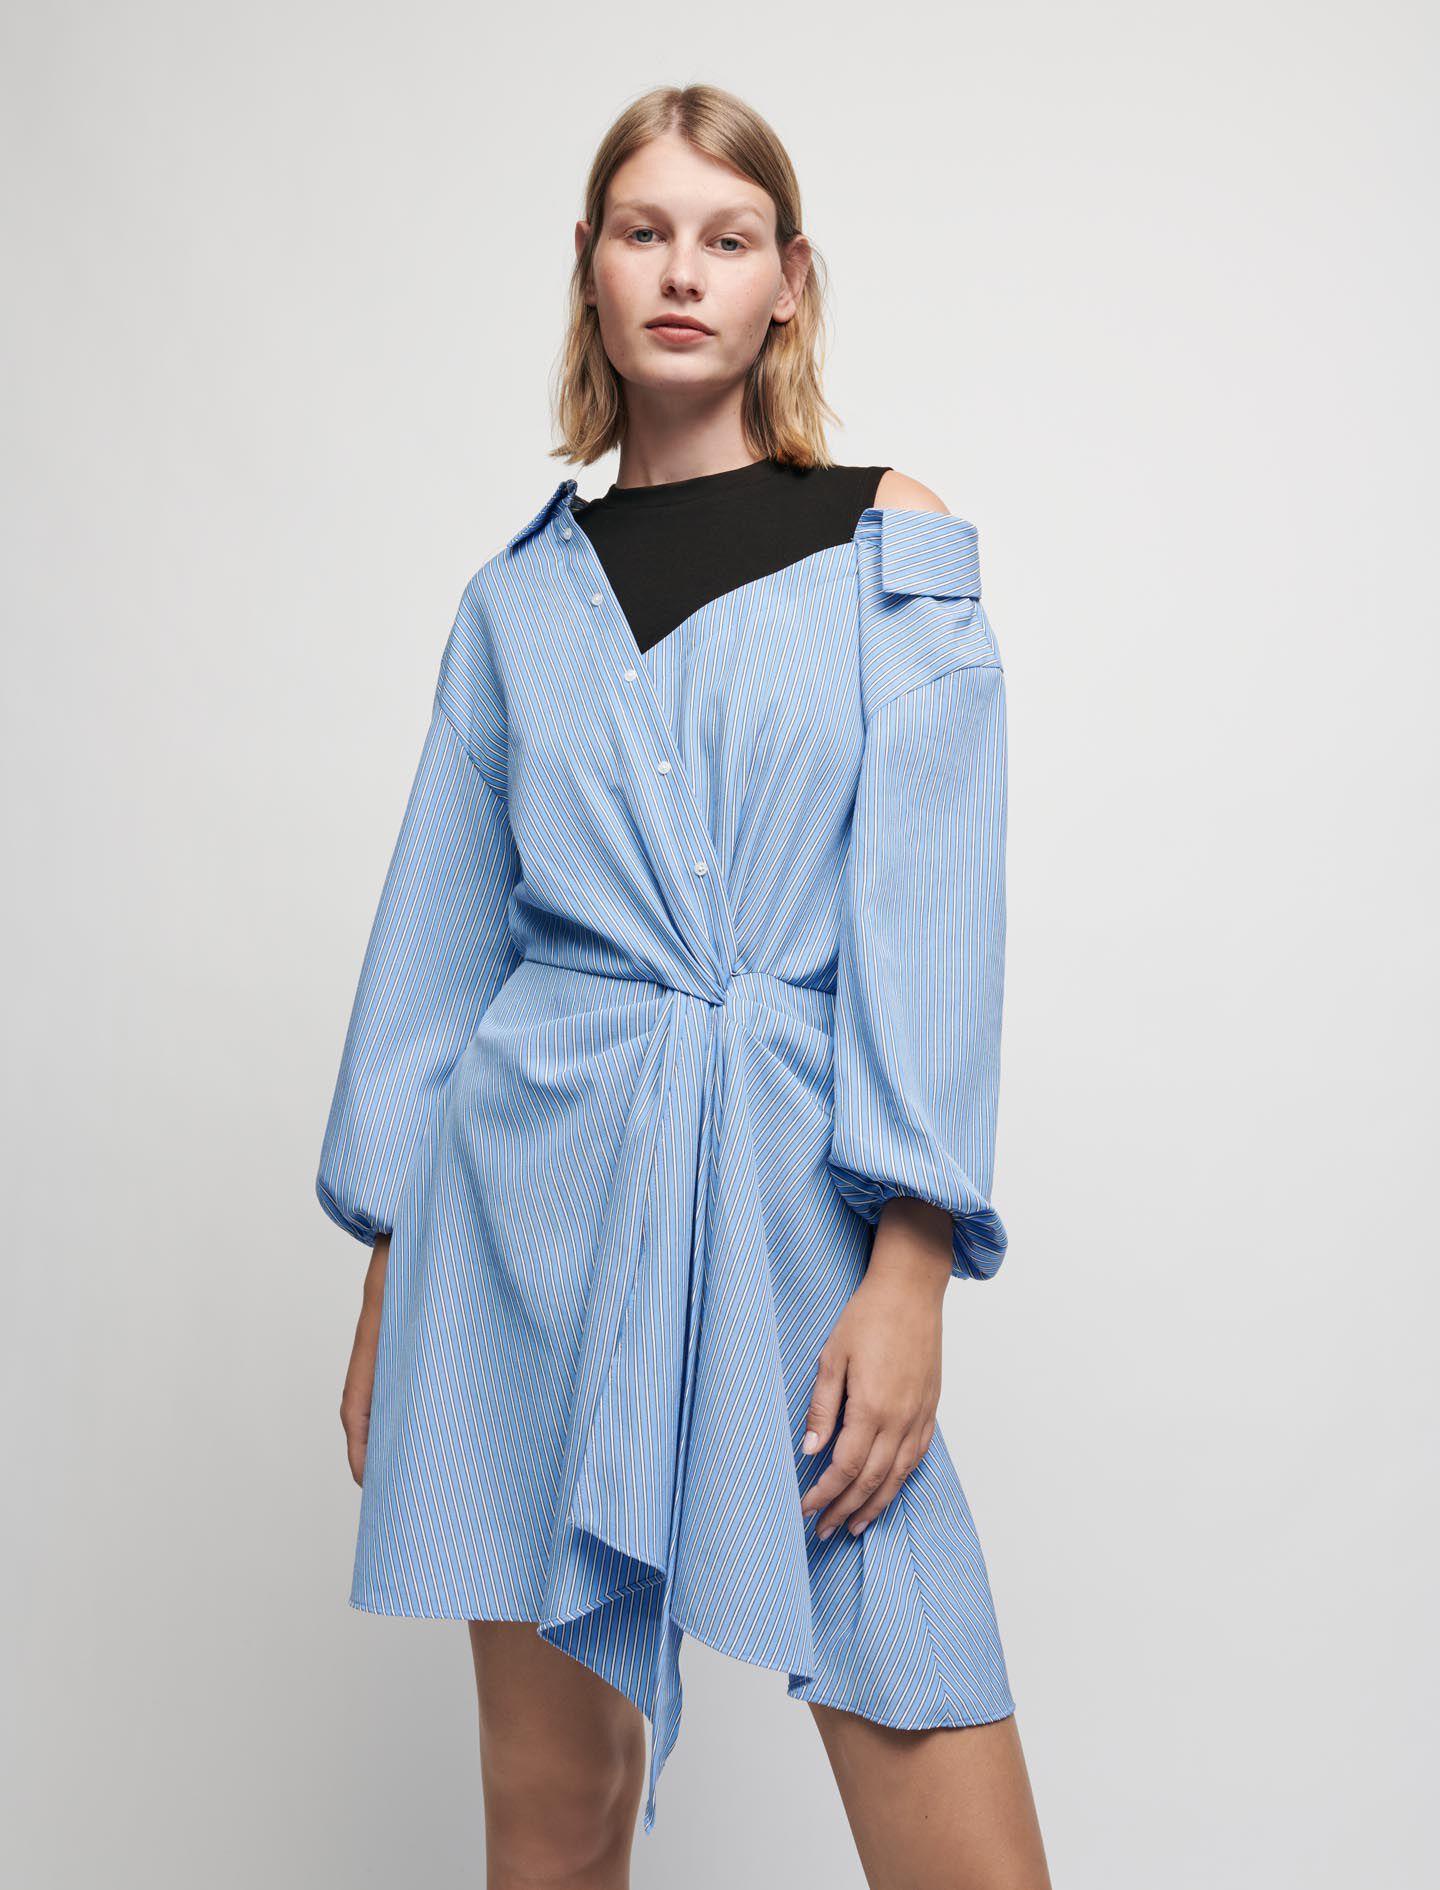 Maje Synthetic Trompe-l'oeil Striped Shirt Dress in Blue Sky (Blue 